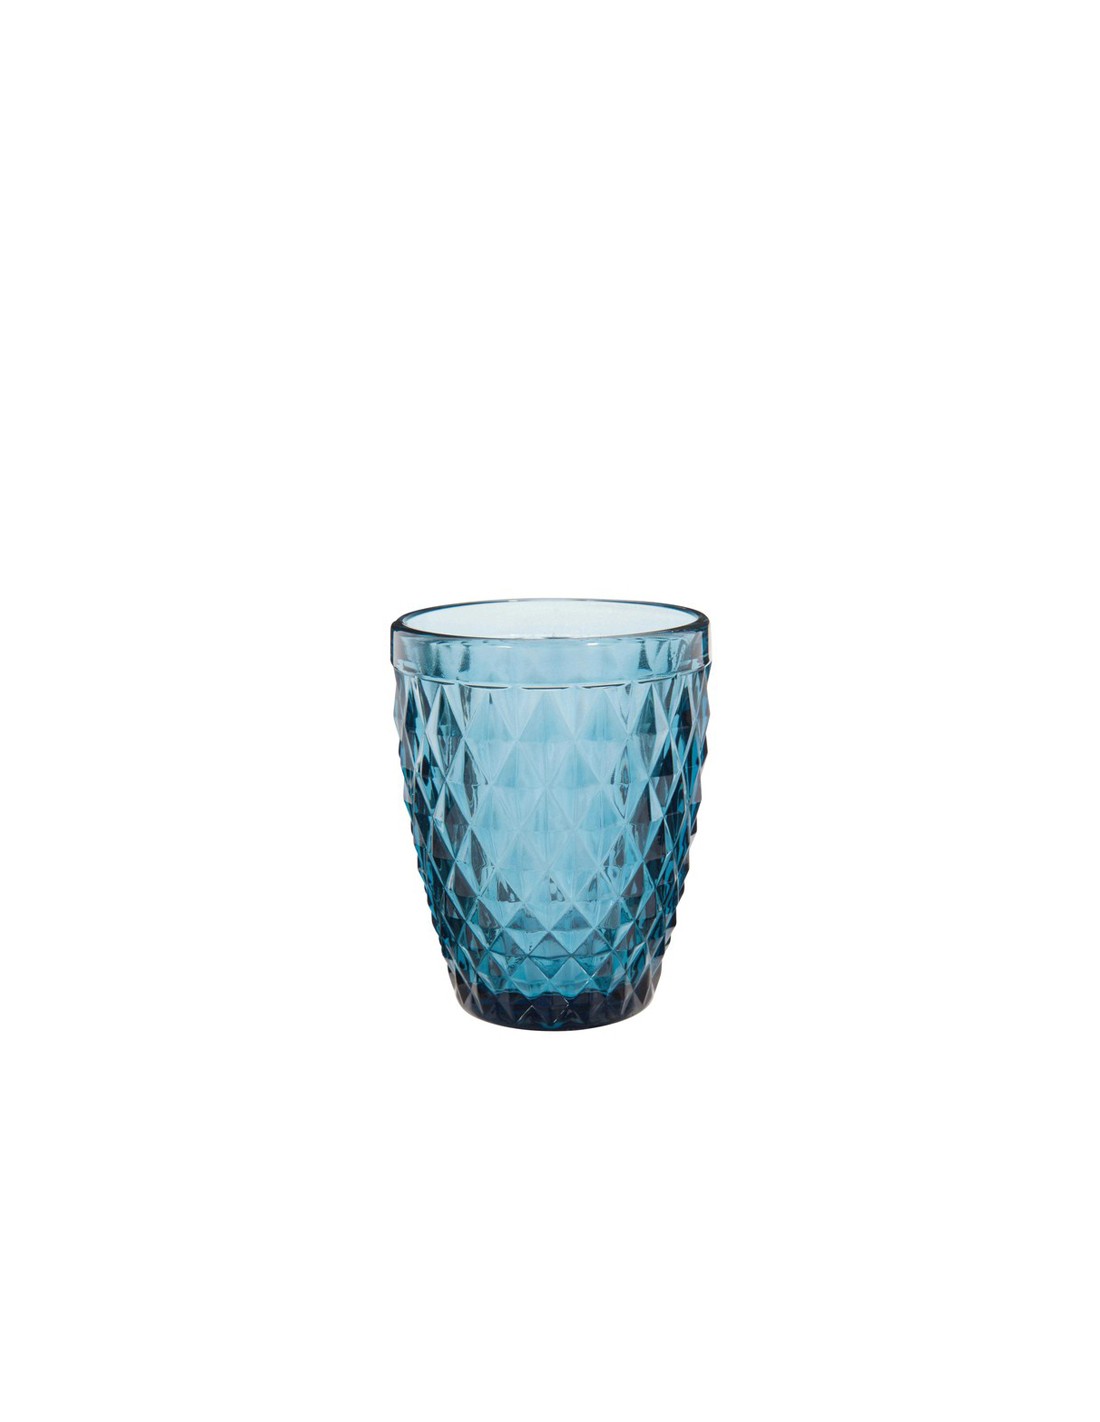 Vaso Azul para Nieve 705-A de 2.6 oz, VA6253A.CR.HP WOW